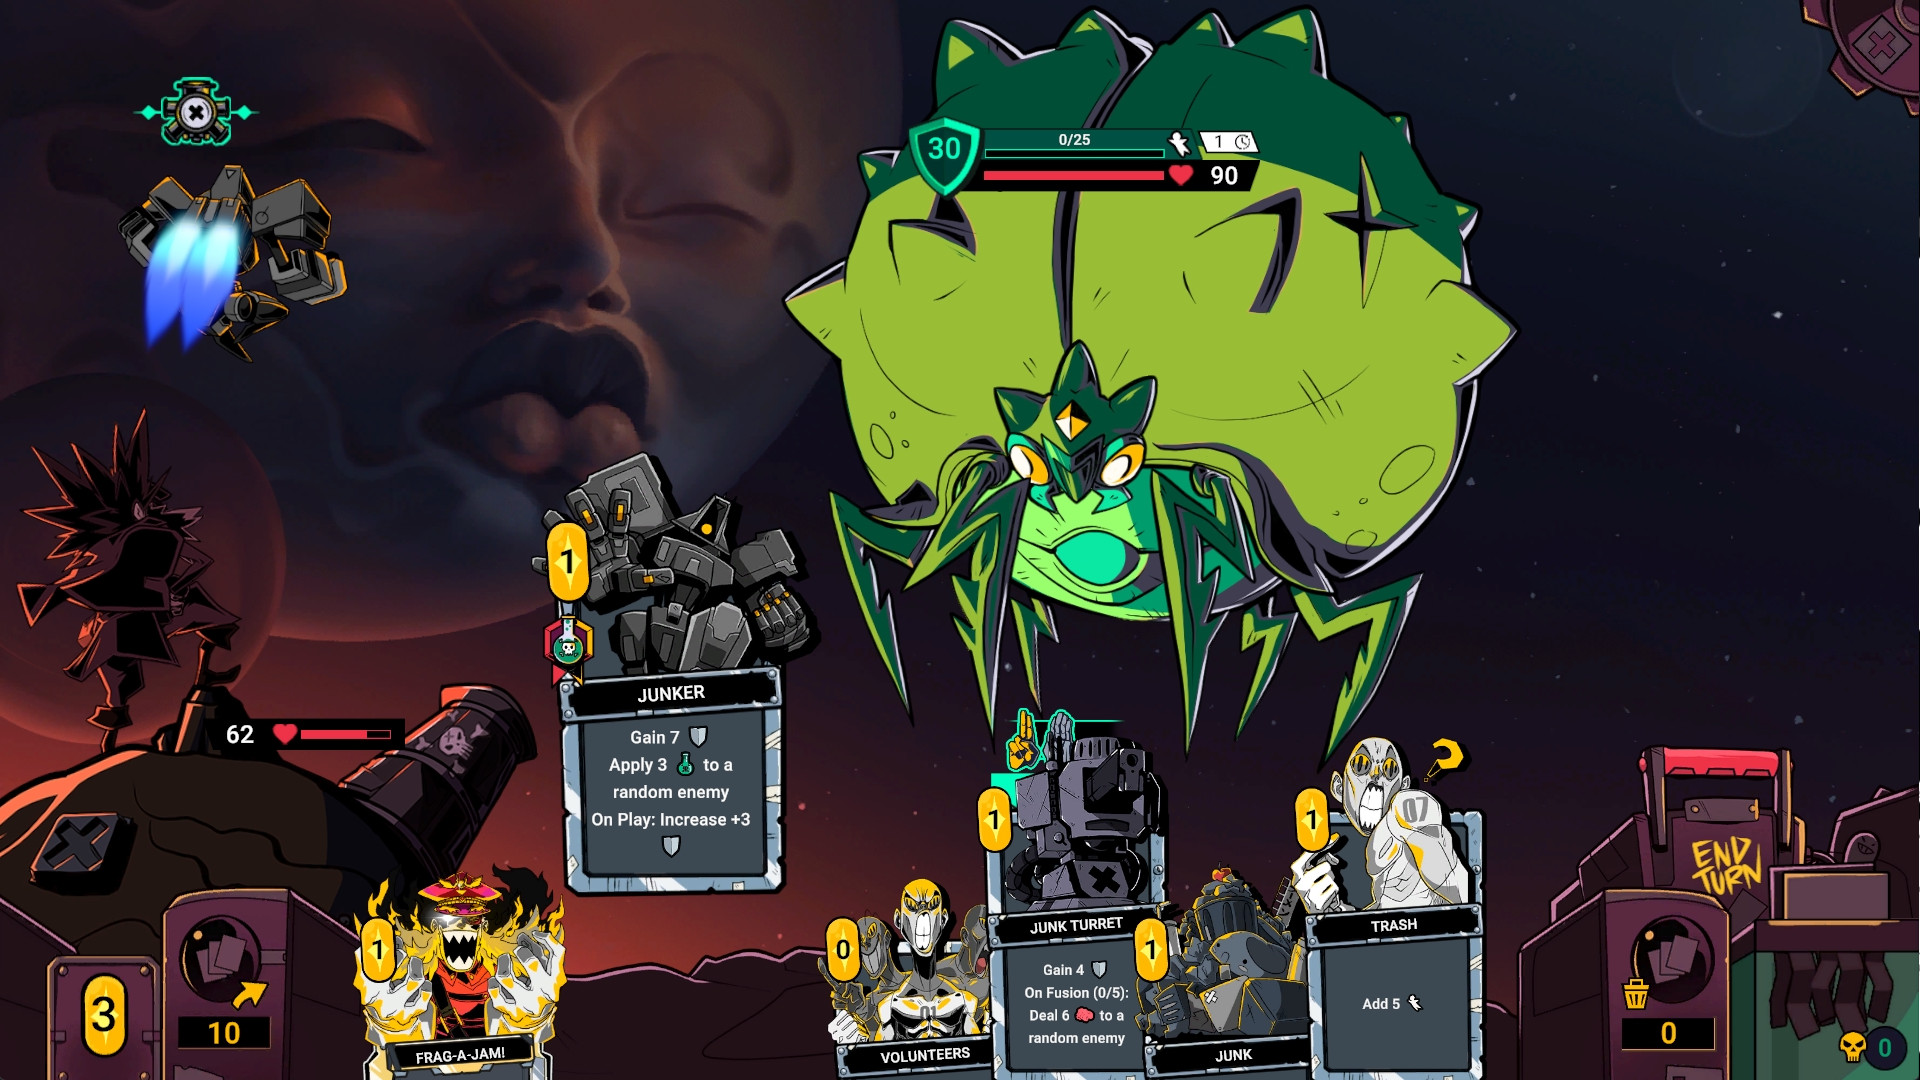 Zet Zillions - Une bataille contre un planétoïde vert en forme d'insecte dans ce jeu spatial de construction de deck roguelike basé sur des cartes.